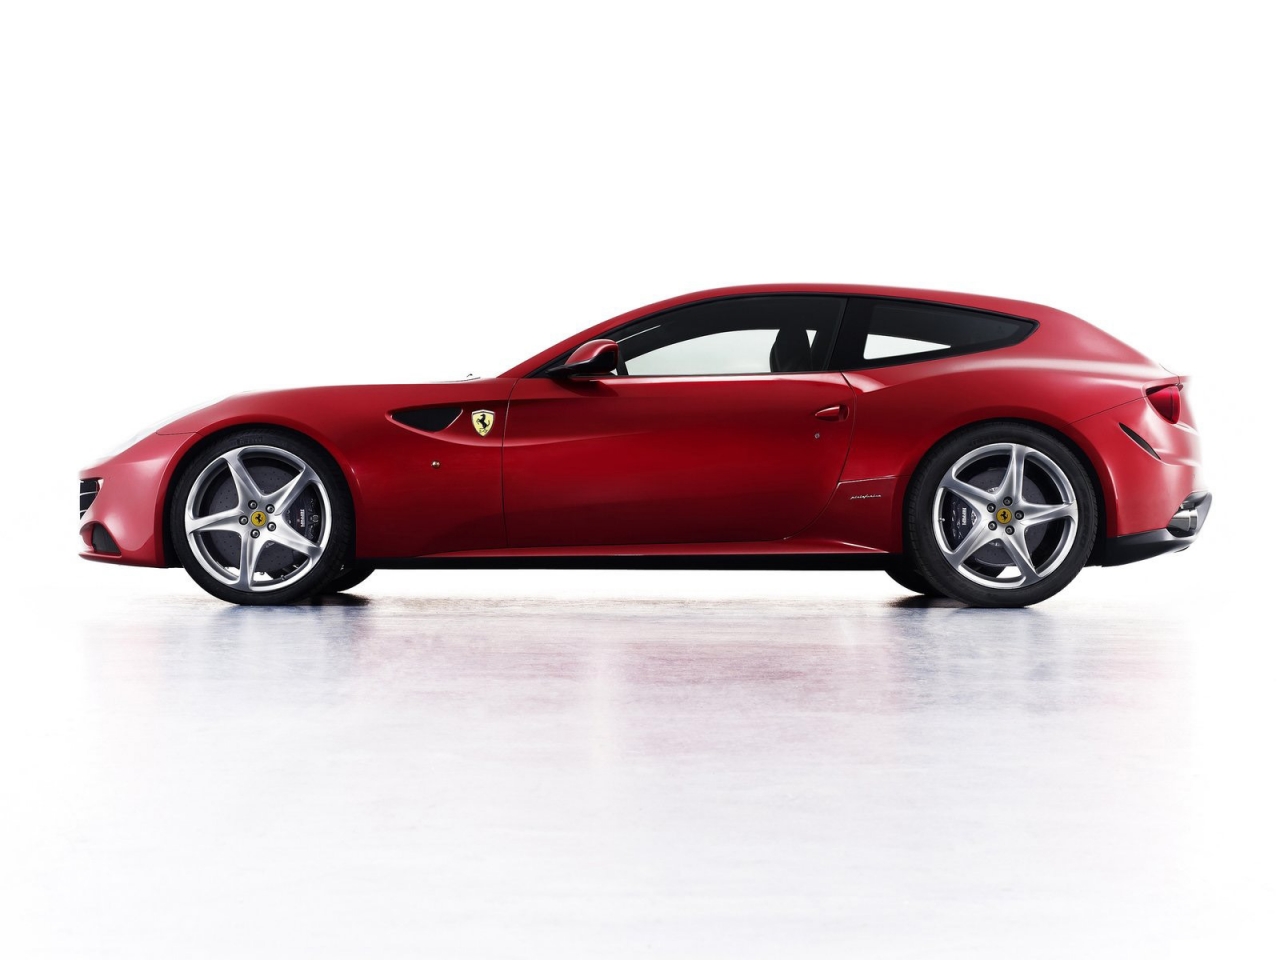 Ferrari FF 2011 for 1280 x 960 resolution